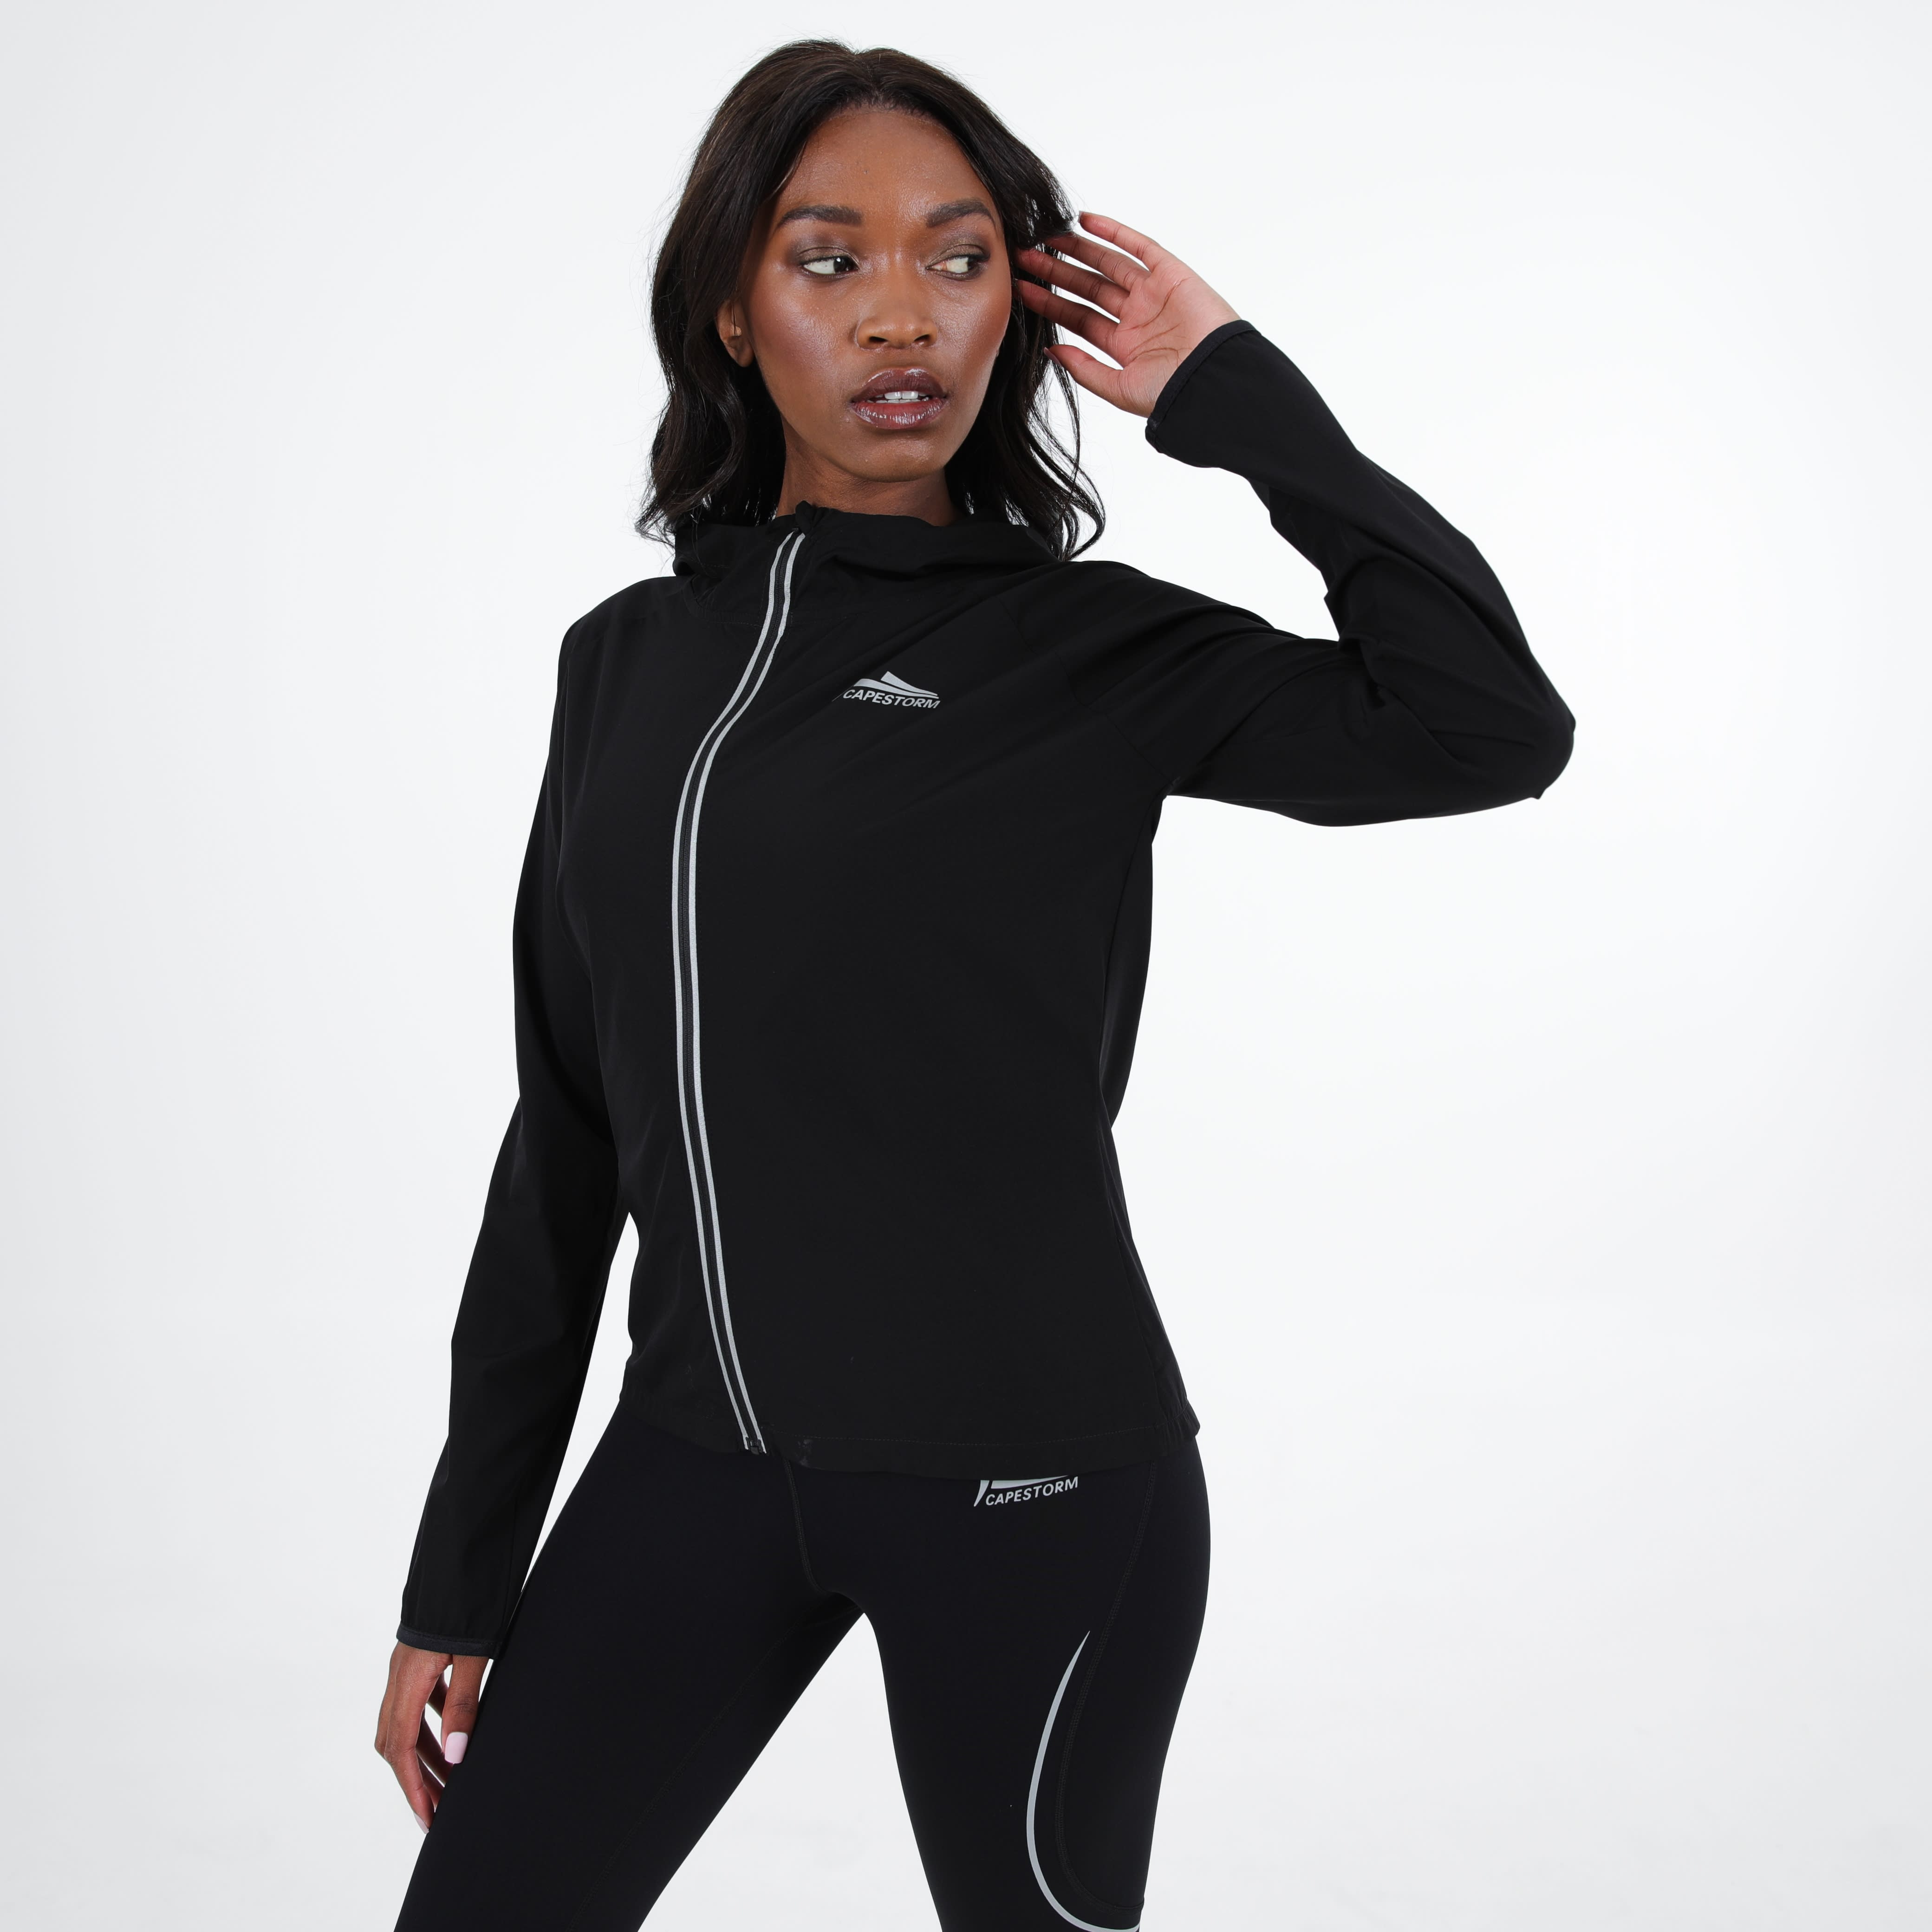 Capestorm Women's Zoom Run Jacket - default